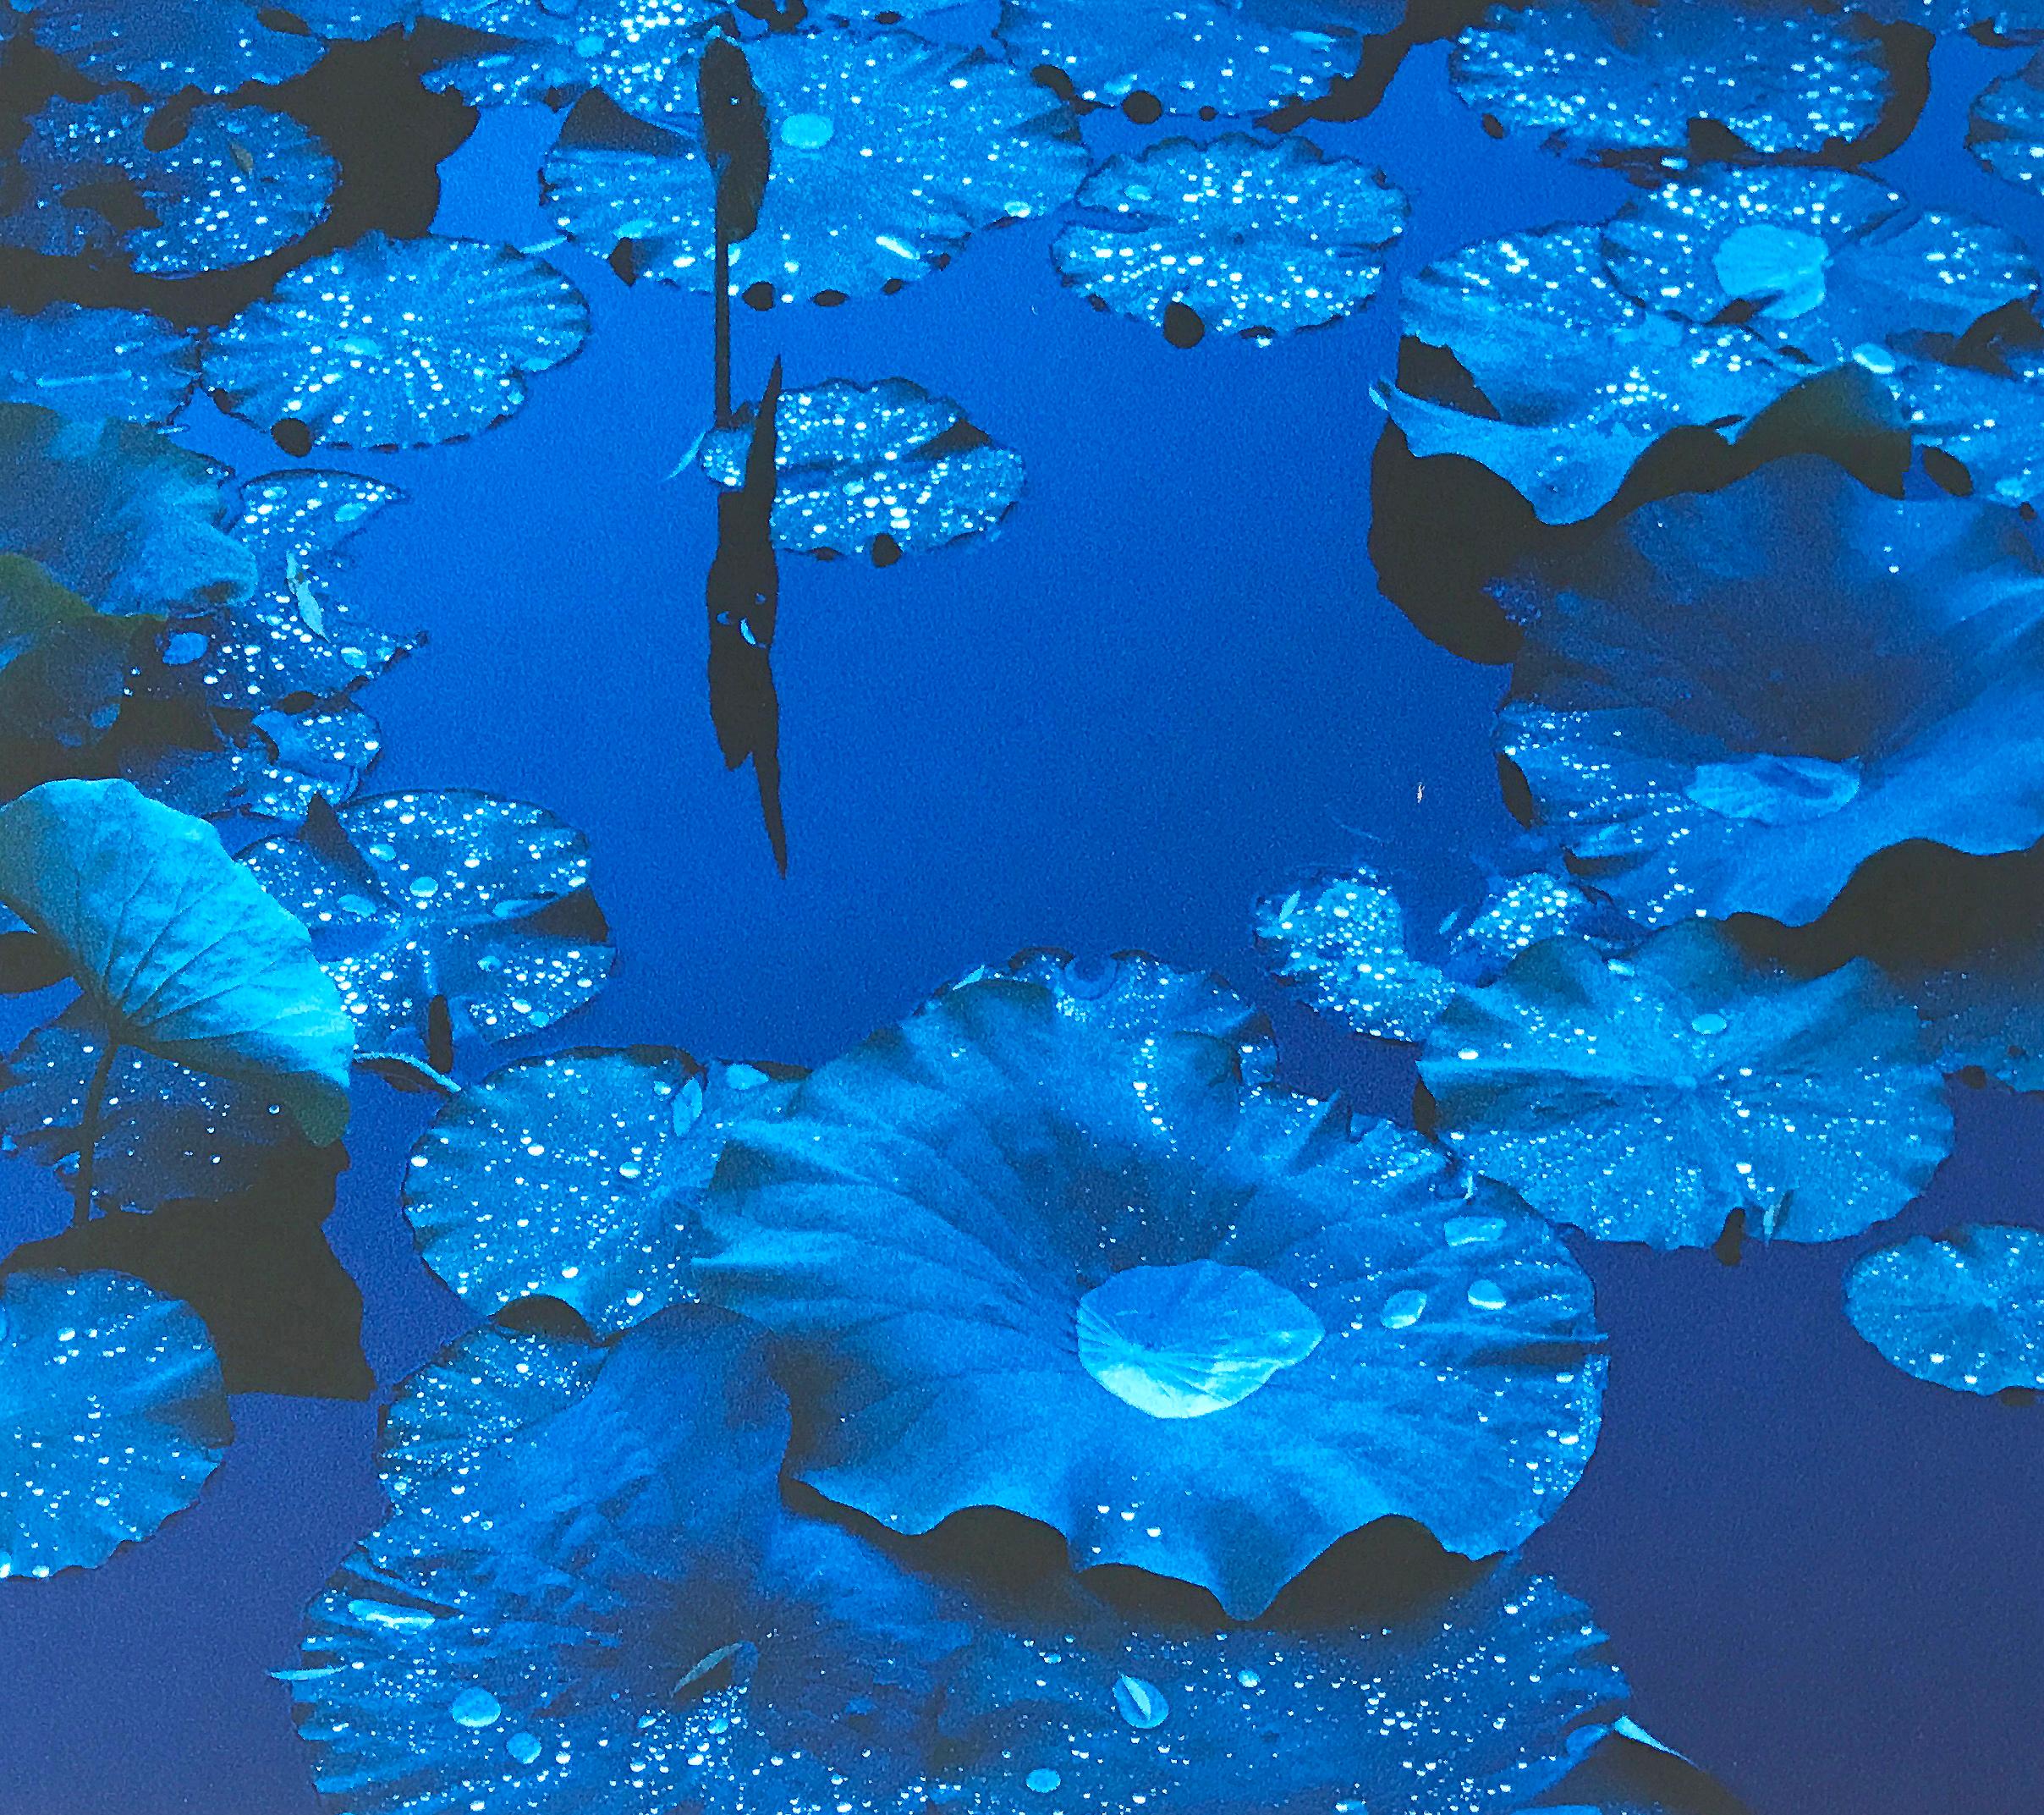 Blauer Lotus, Japan, zeitgenössische farbige japanische Fotografie, signiert vom Künstler – Photograph von Tadayuki Naito